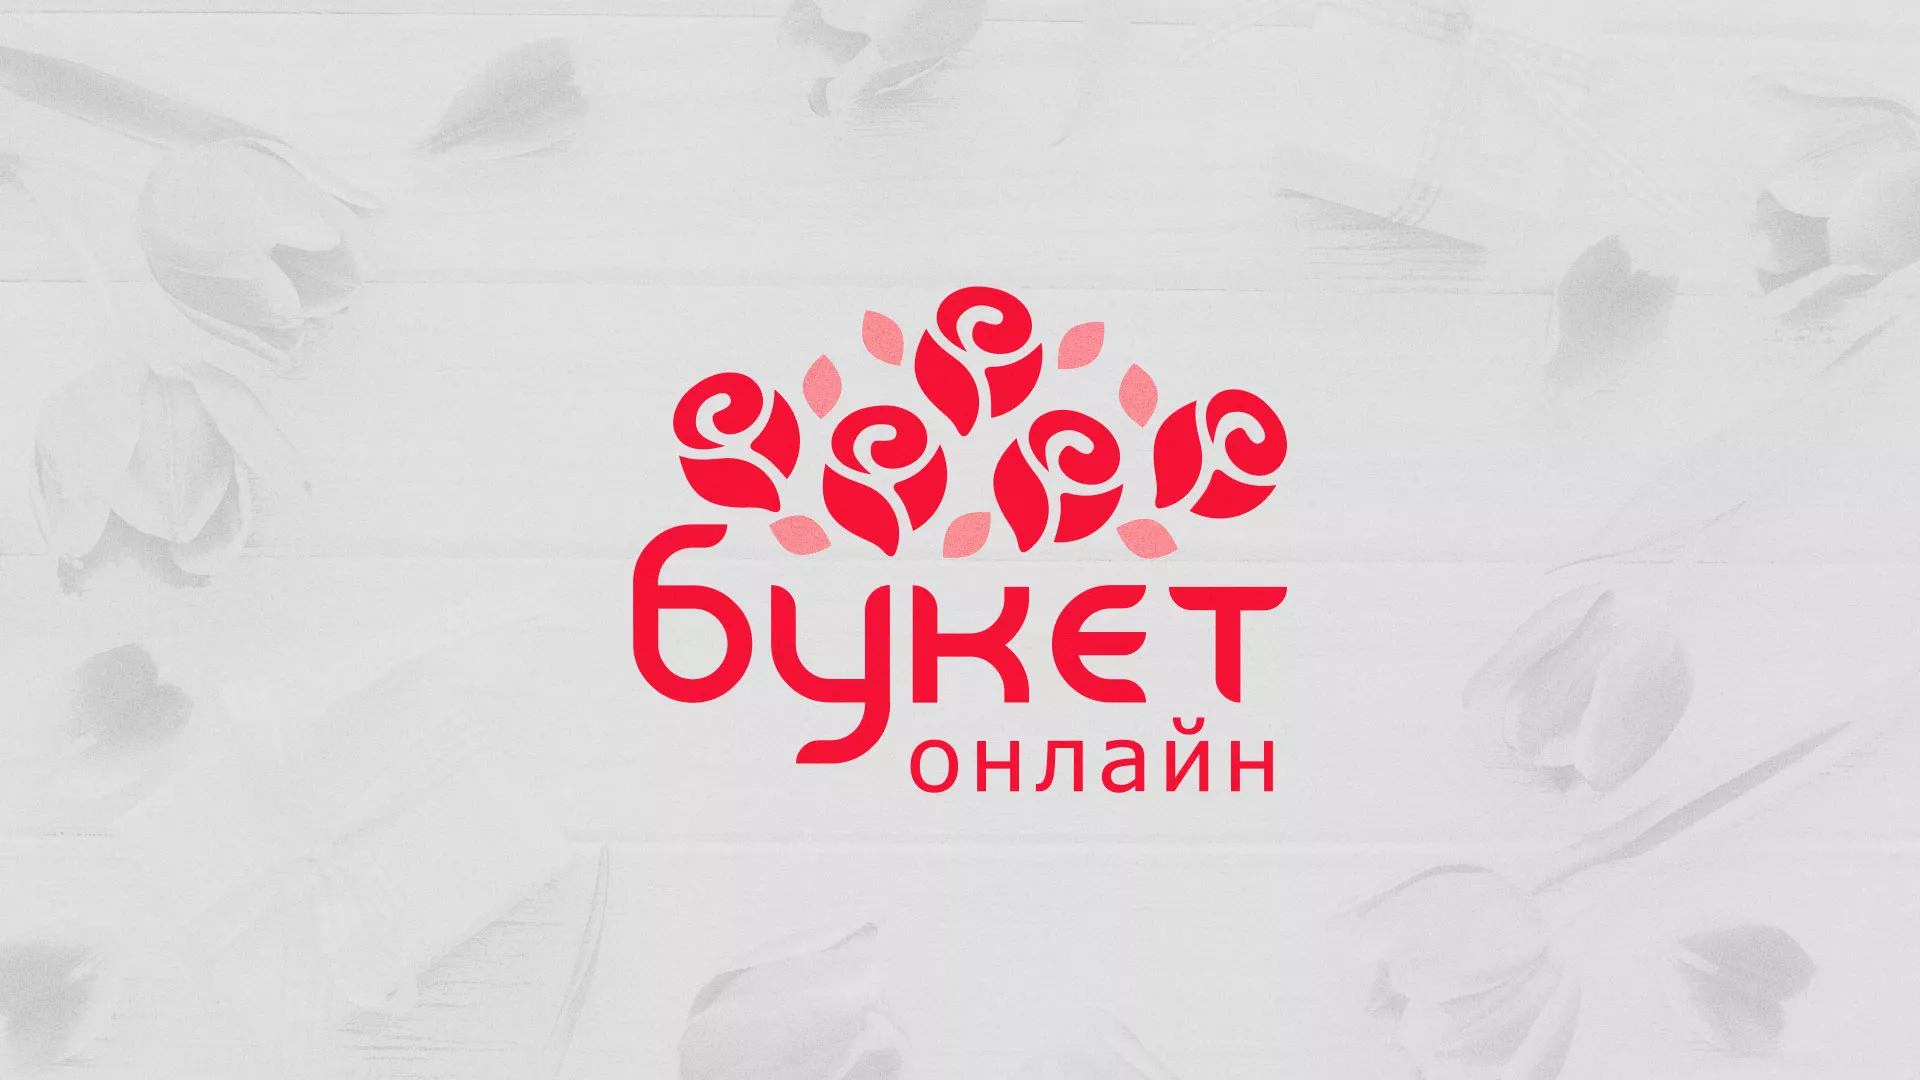 Создание интернет-магазина «Букет-онлайн» по цветам в Калязине